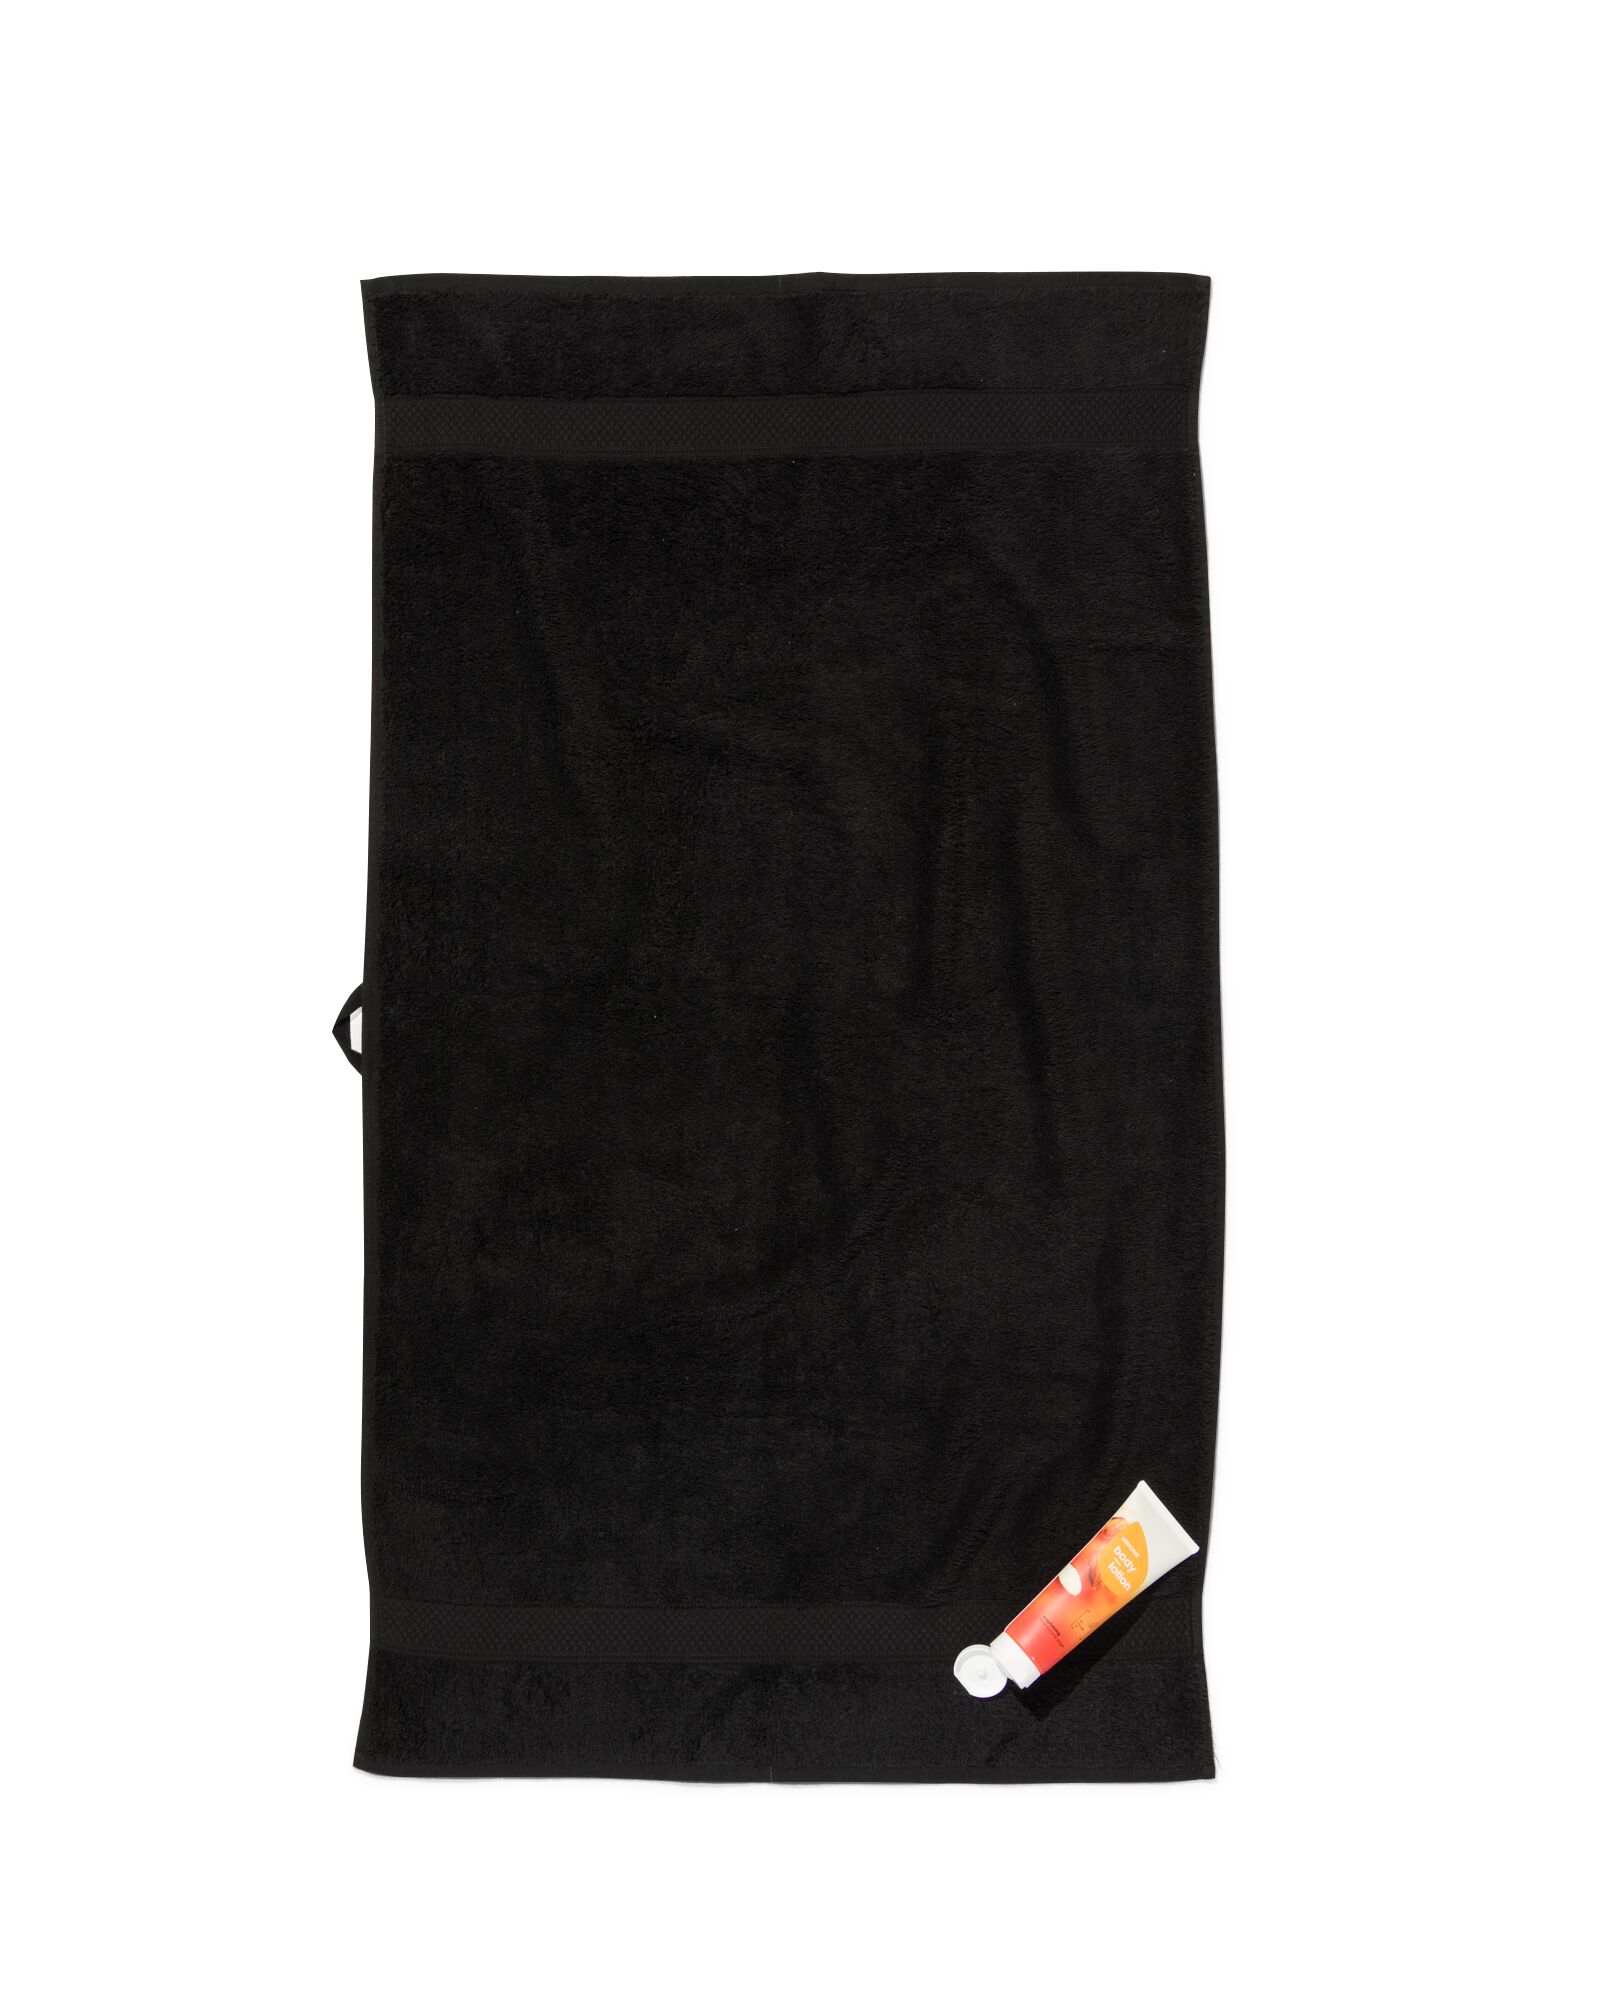 handdoek 60x110 zware kwaliteit zwart zwart handdoek 60 x 110 - 5210136 - HEMA